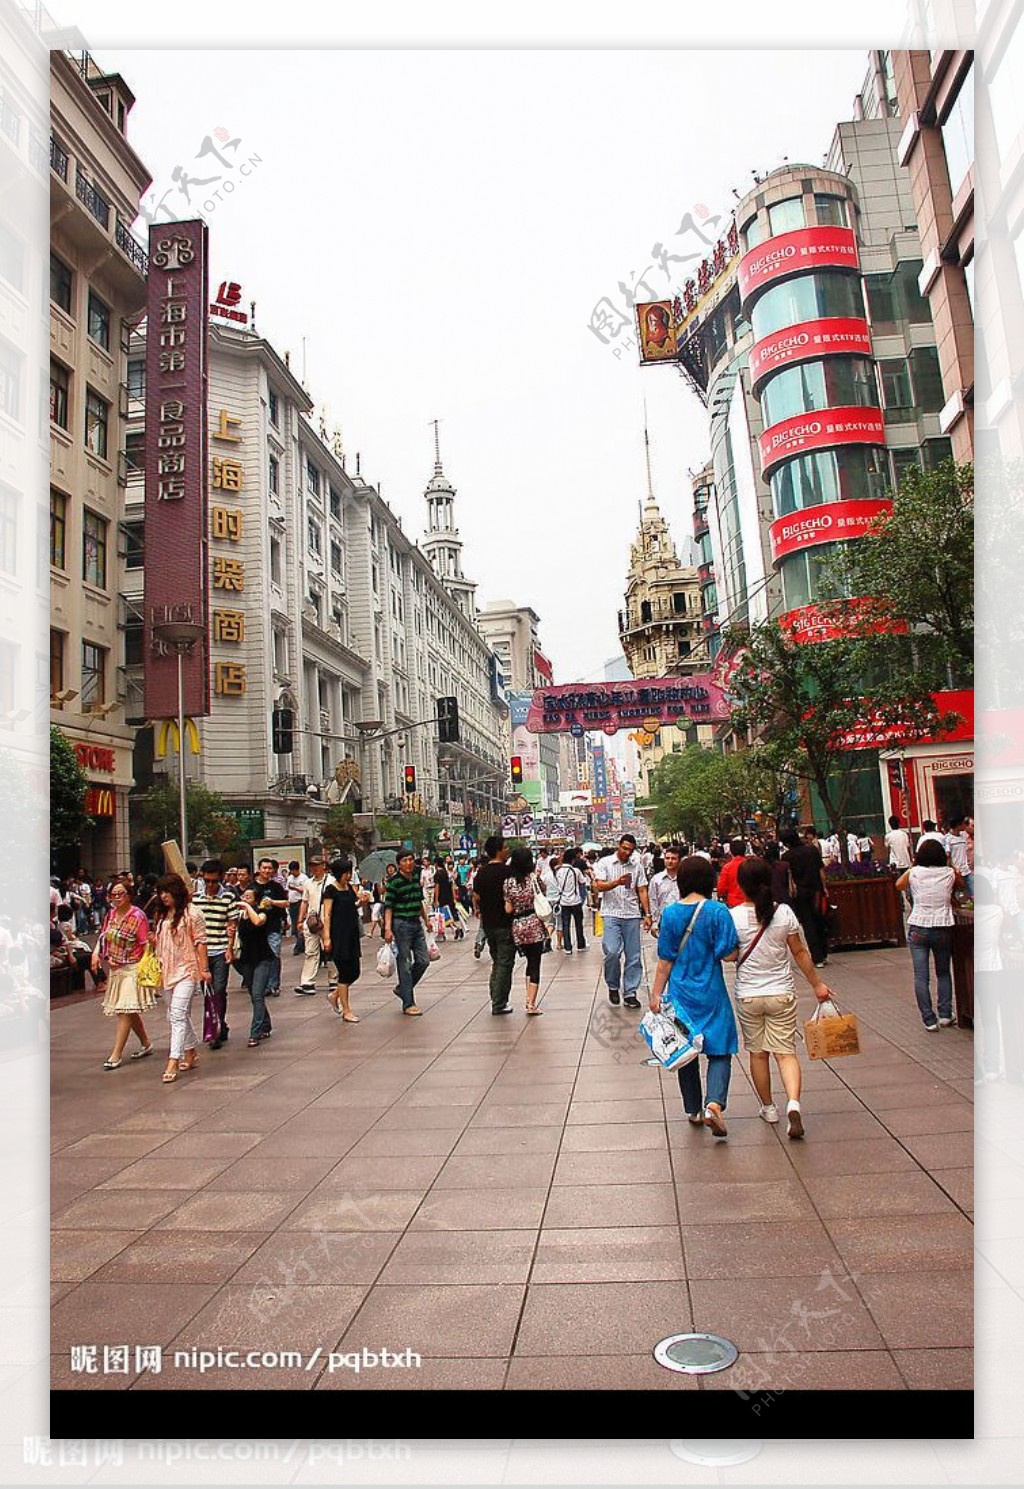 上海南京路步行街3图片